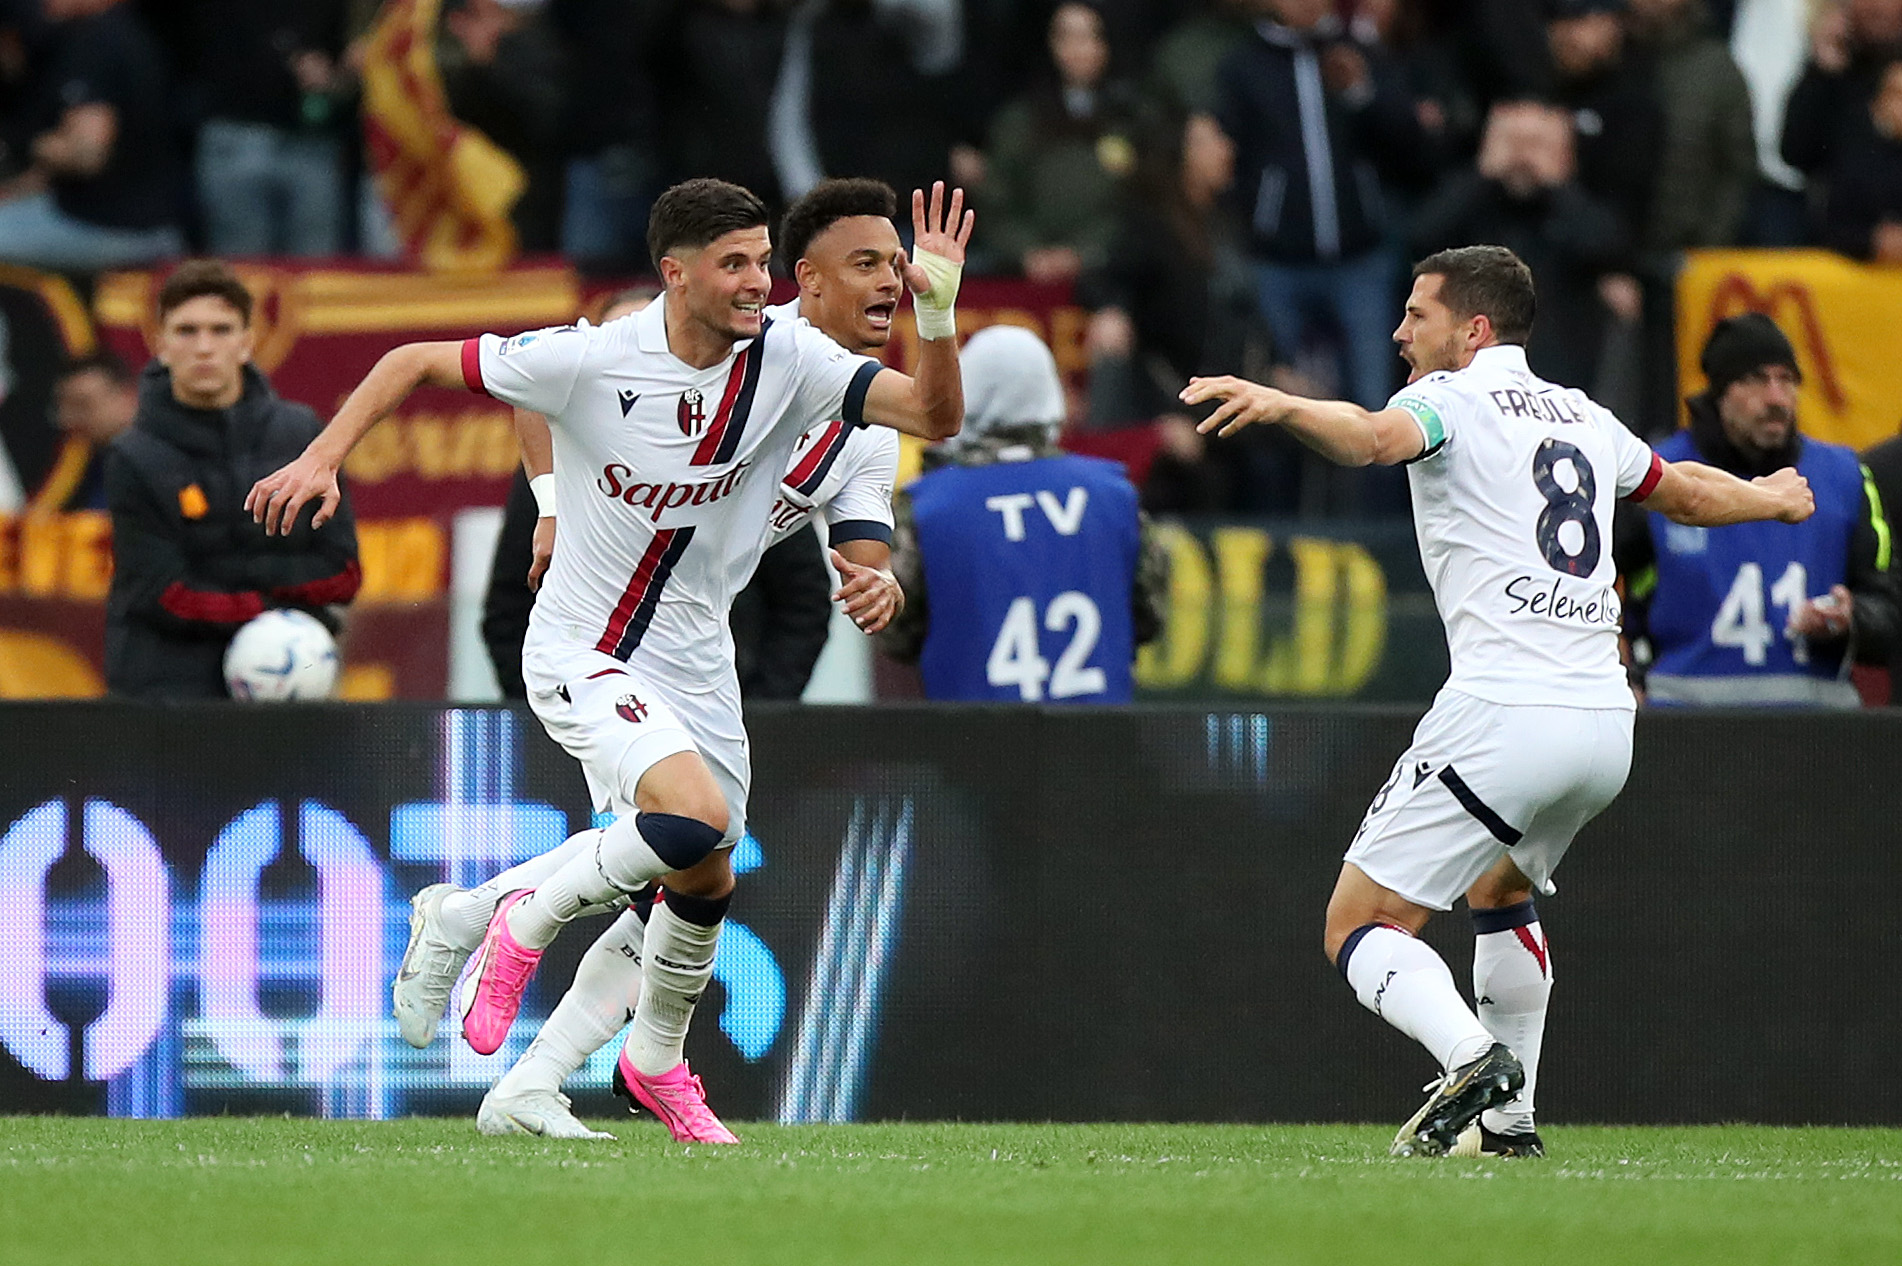 VIDEO – Roma Bologna 1 3, Serie A: gol e highlights della partita